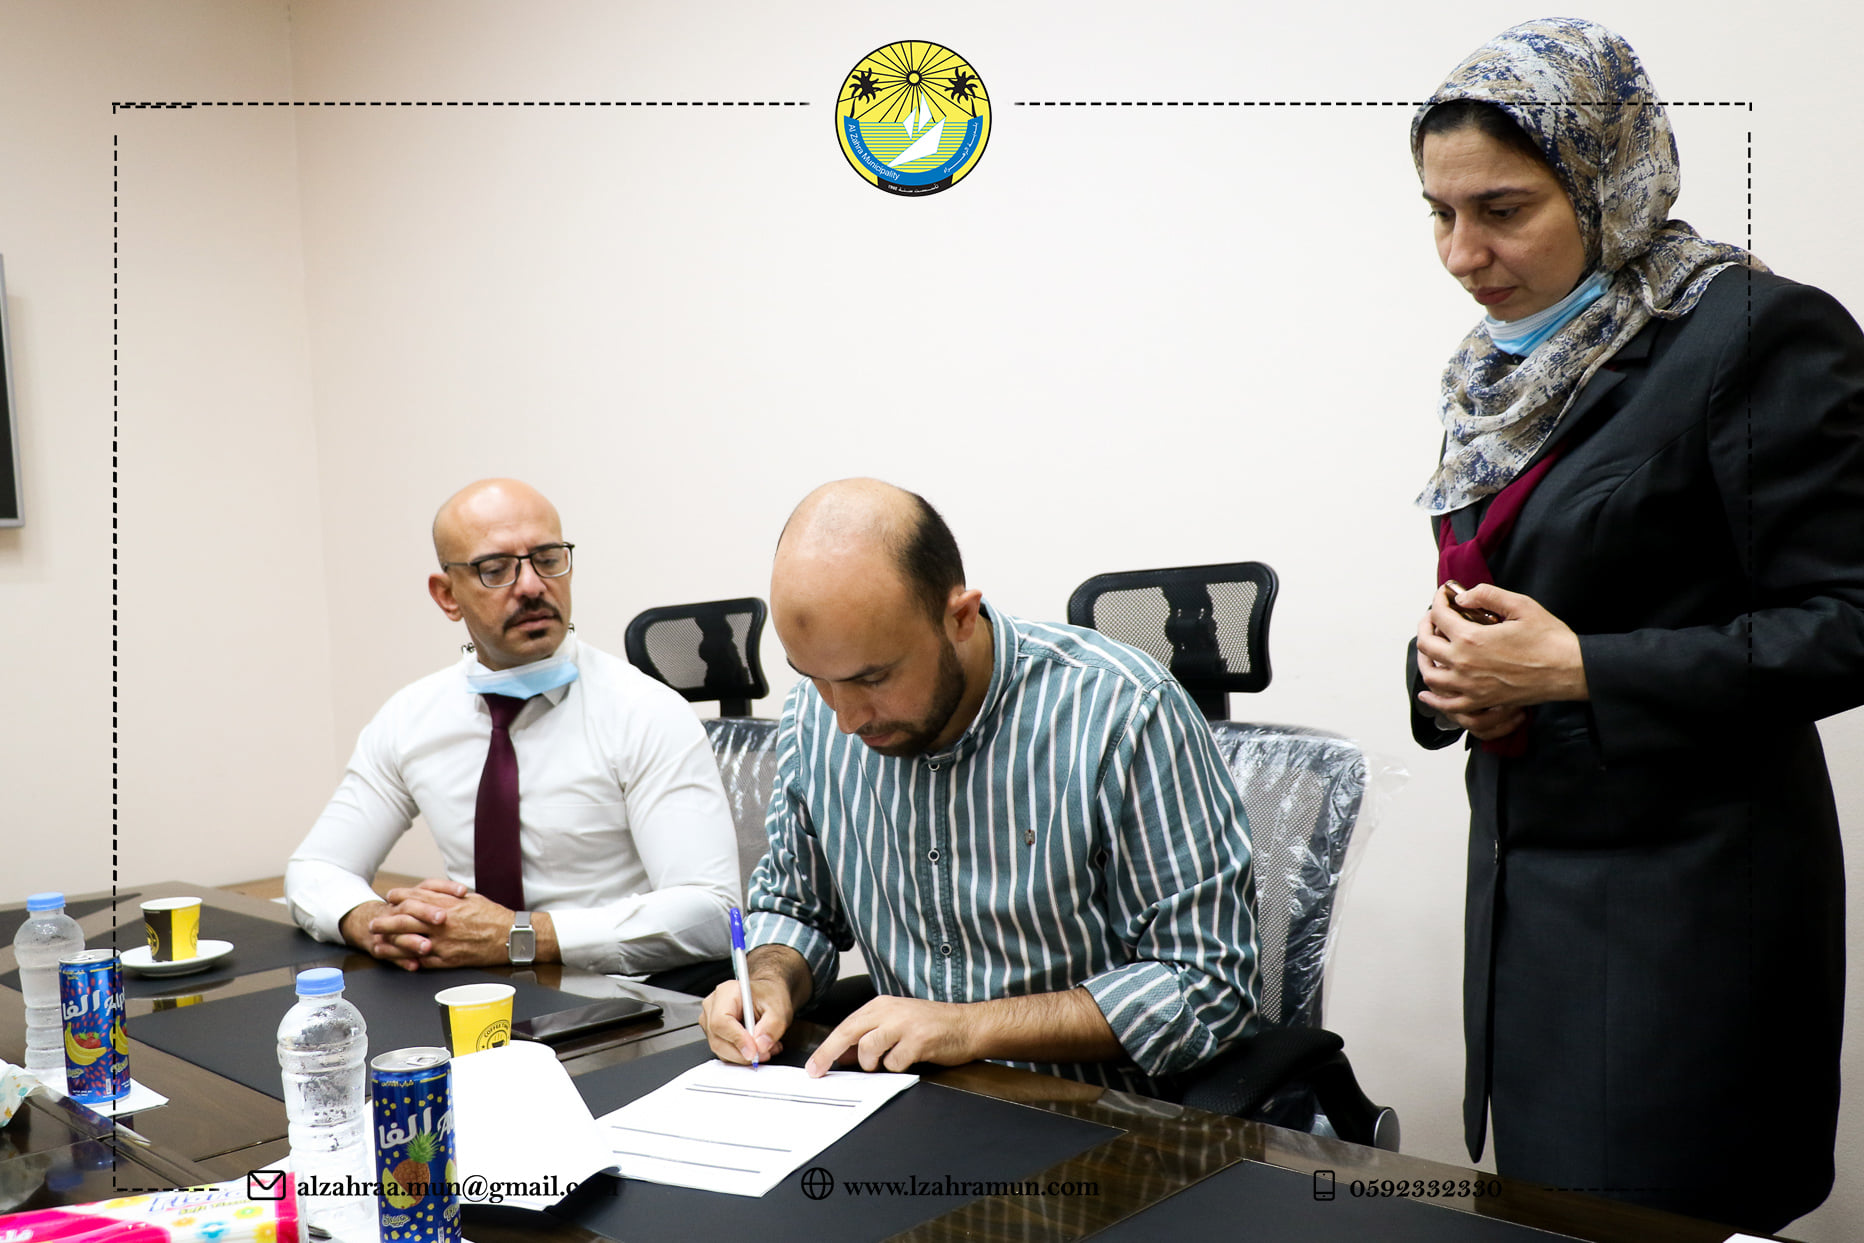 بلدية الزهراء وبنك فلسطين يوقعان إتفاقية تعاون مشترك لتطوير الخدمات الرقمية .